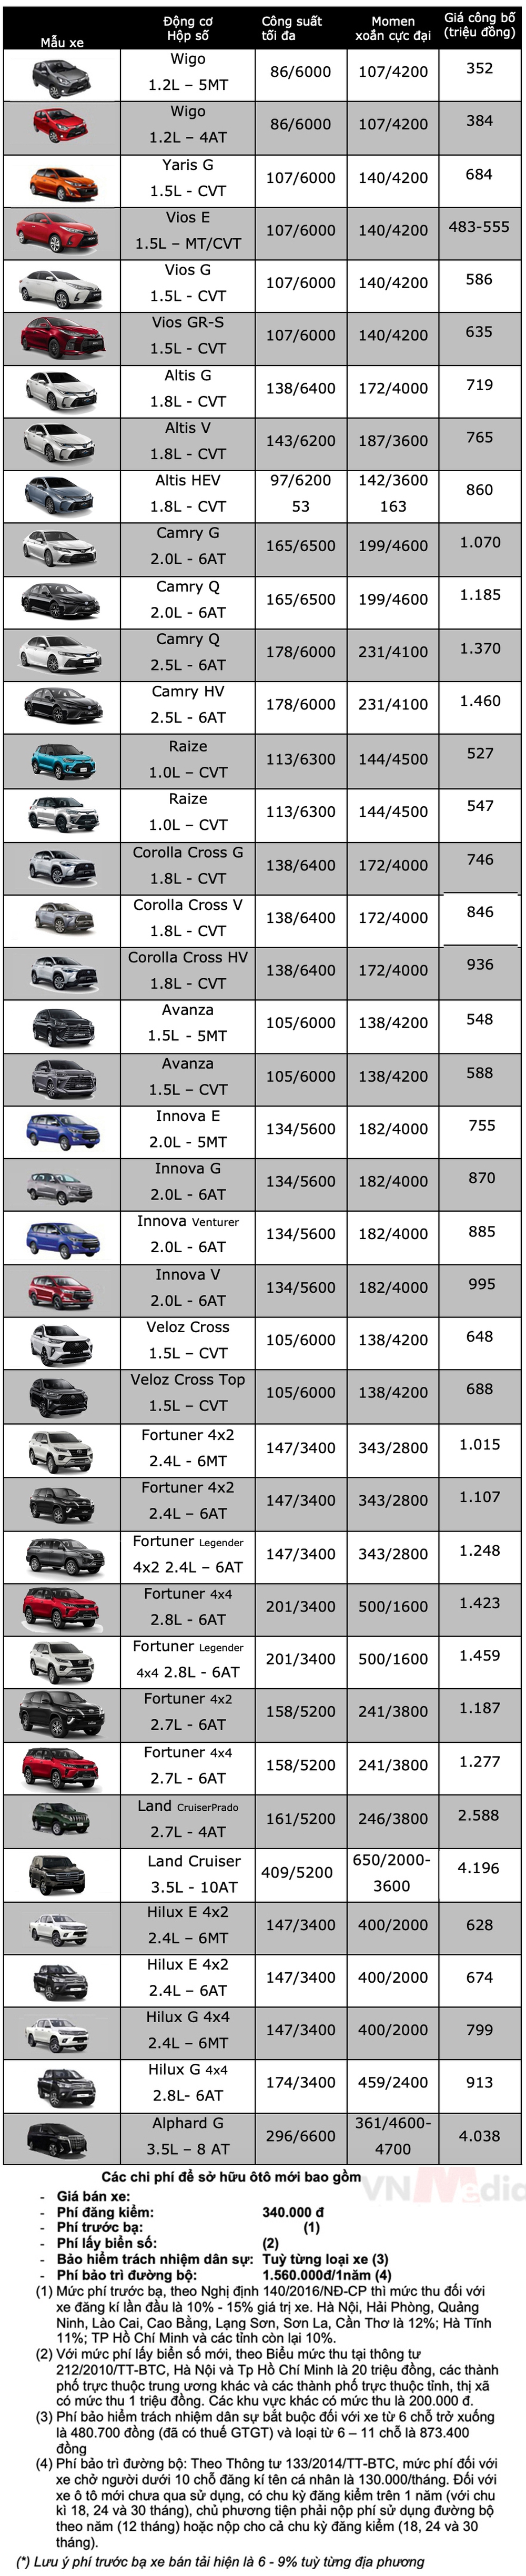 Bảng giá xe Toyota tháng 12: Toyota Vios được ưu đãi 50% phí trước bạ - Ảnh 2.